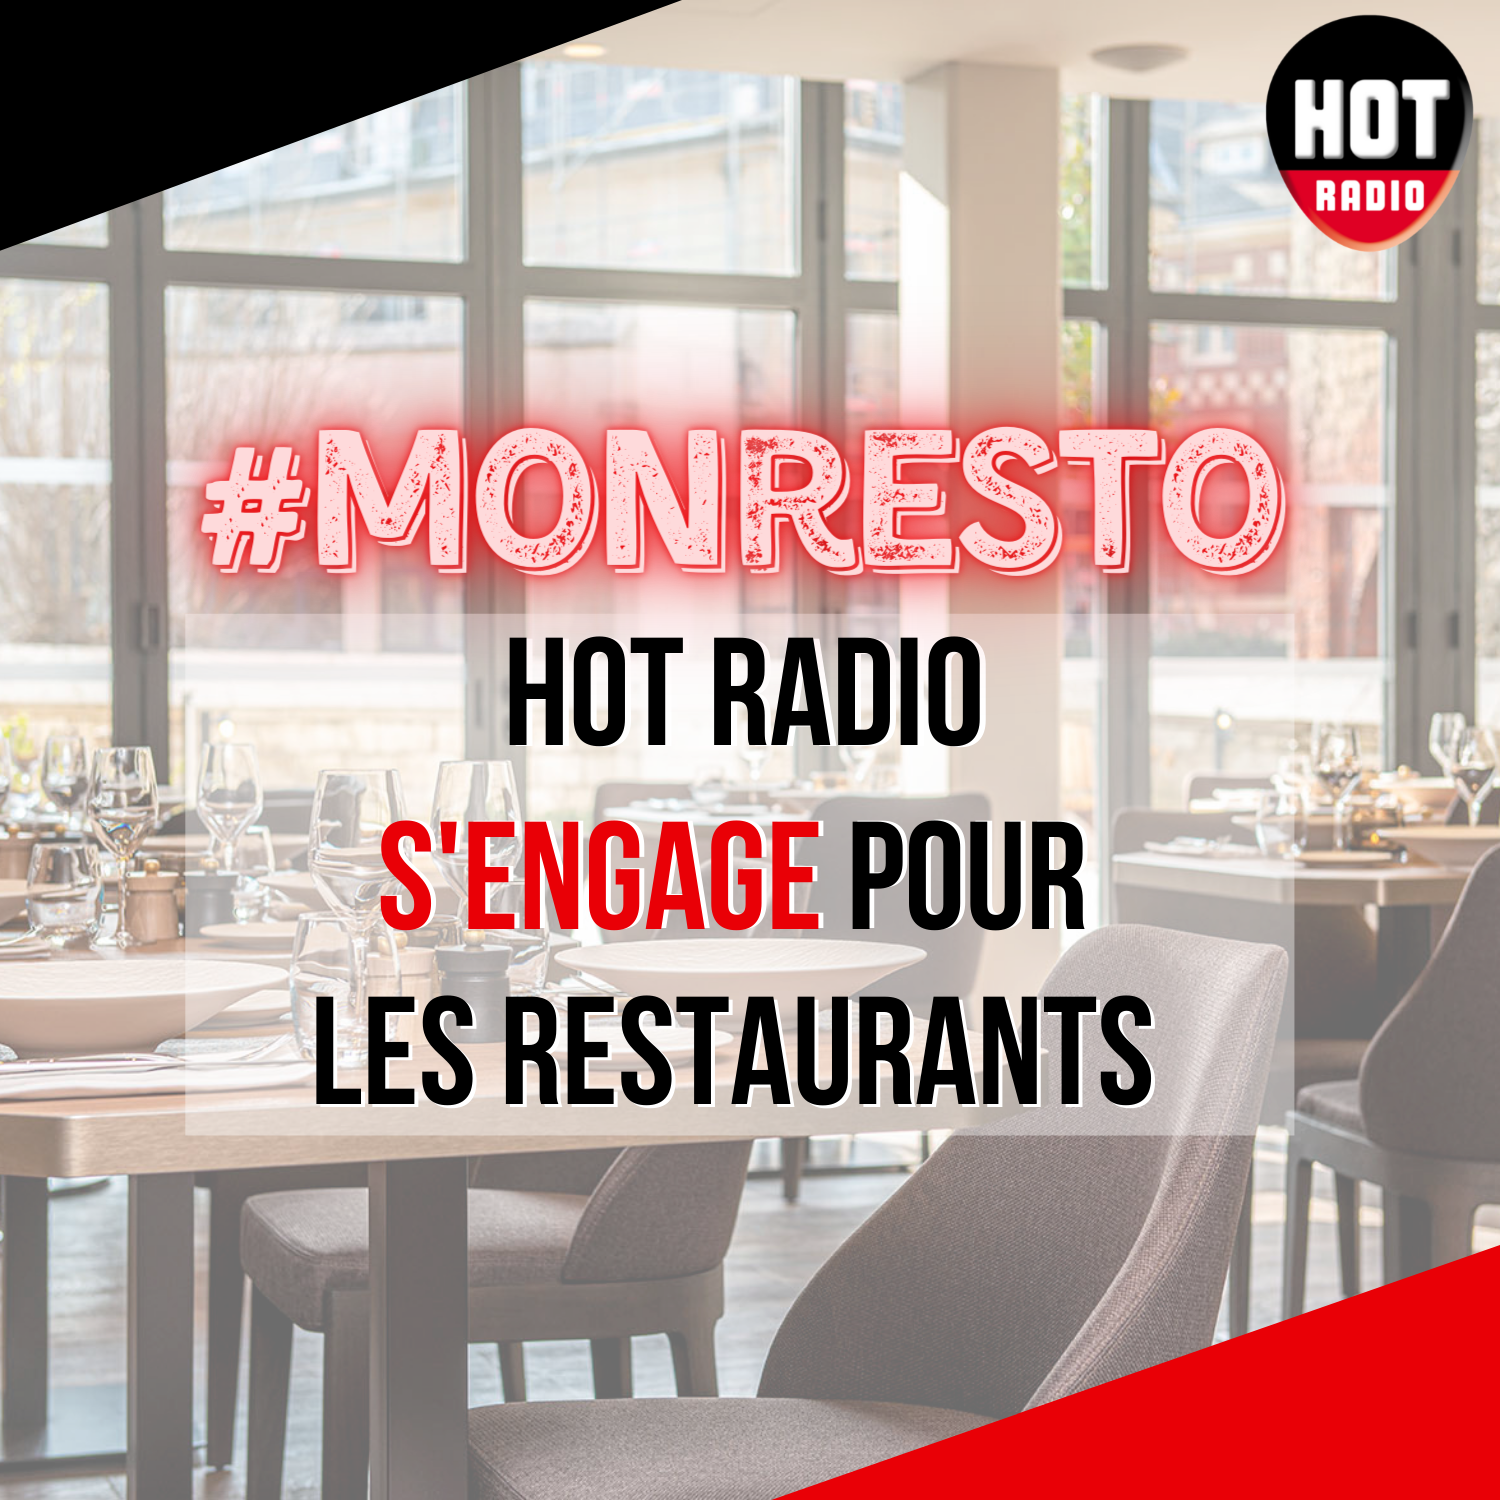 Hot Radio s'engage pour les restaurants